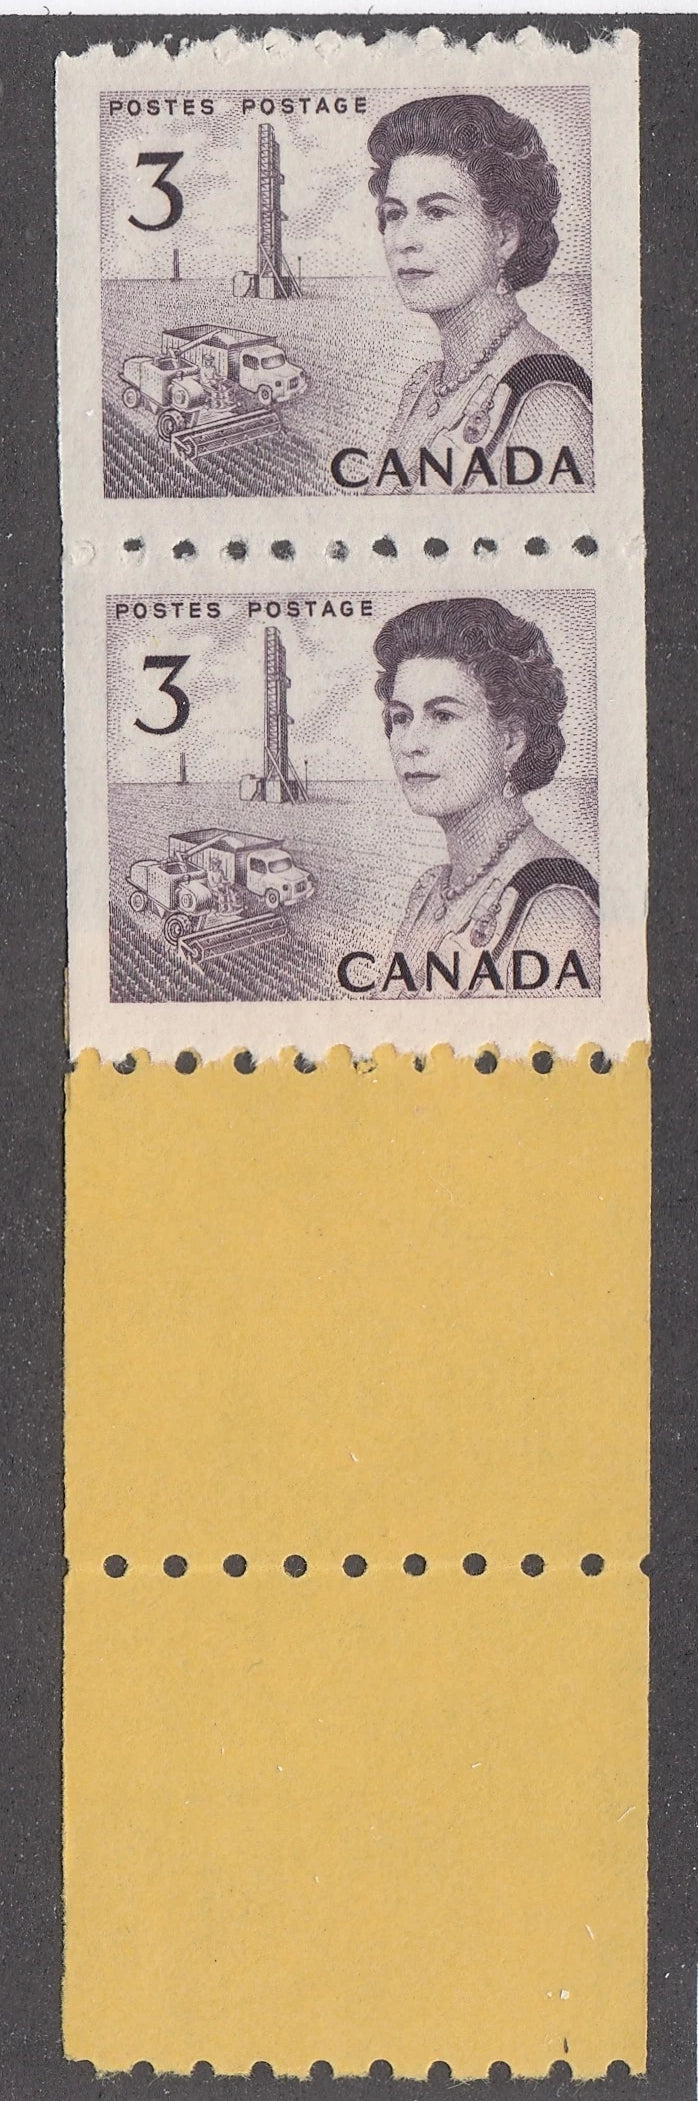 0466CA2105 - Canada #466 - Mint Coil Start Strip